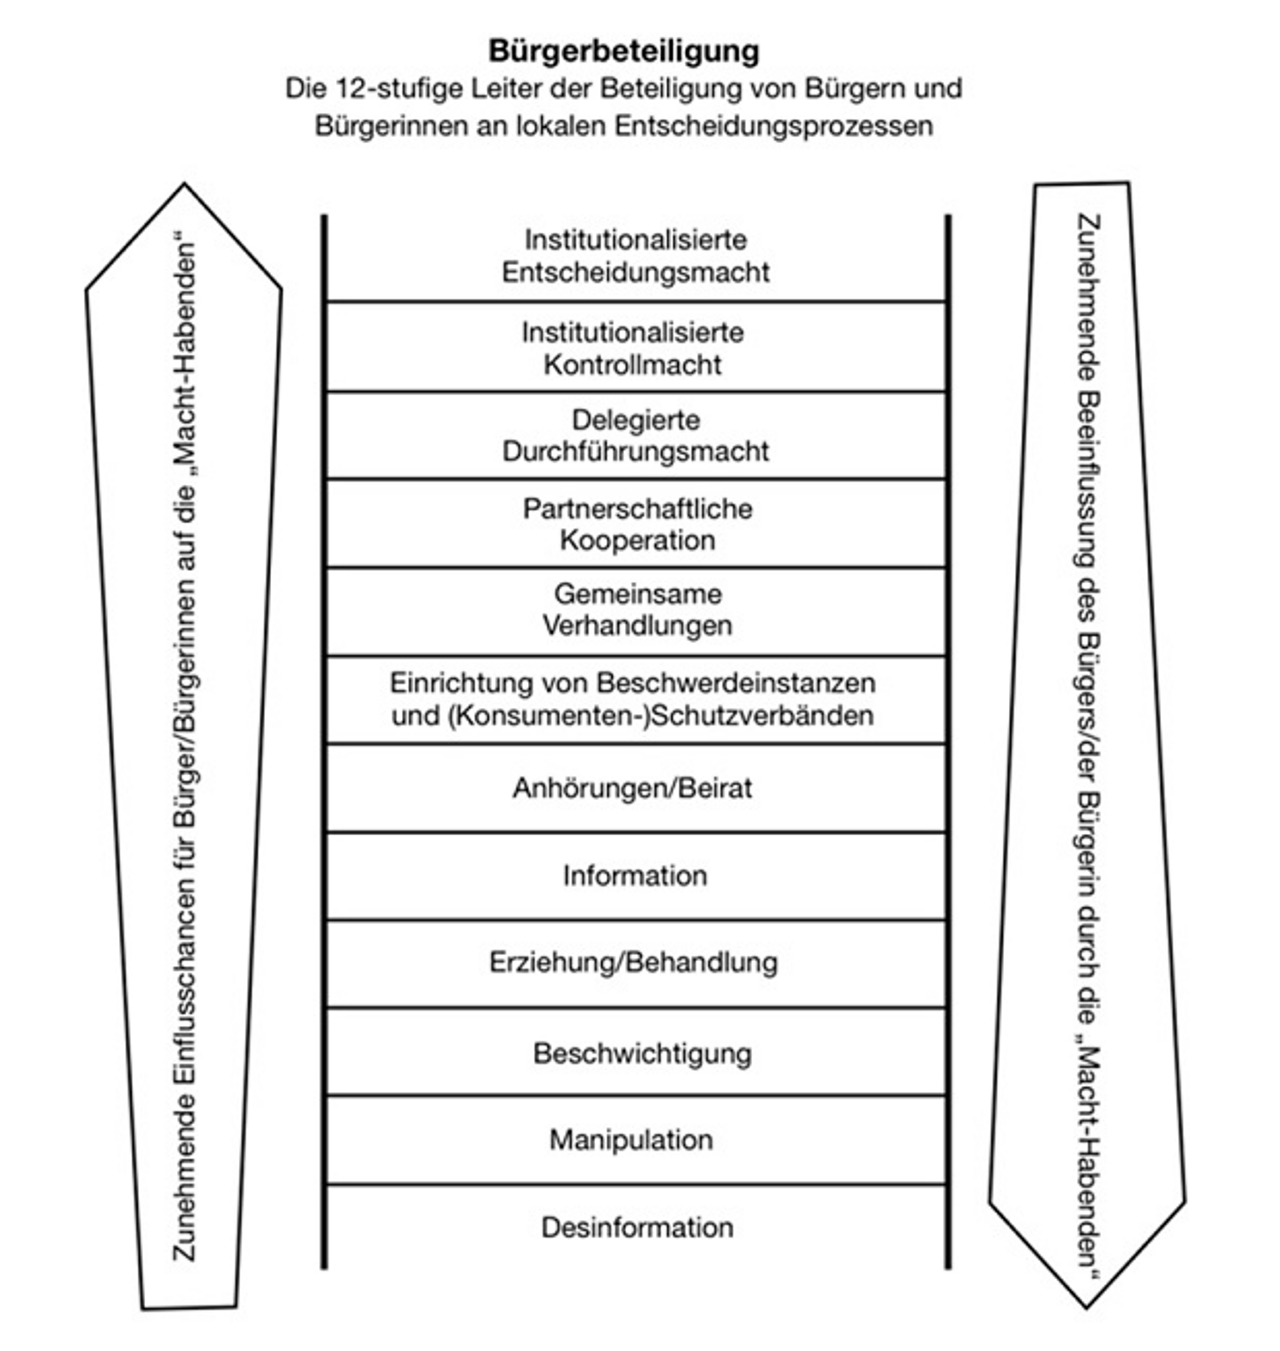 Abb. 1: Systematik verschiedener Beteiligungsformen („12-Stufen-Leiter“), nach Trojan 1990